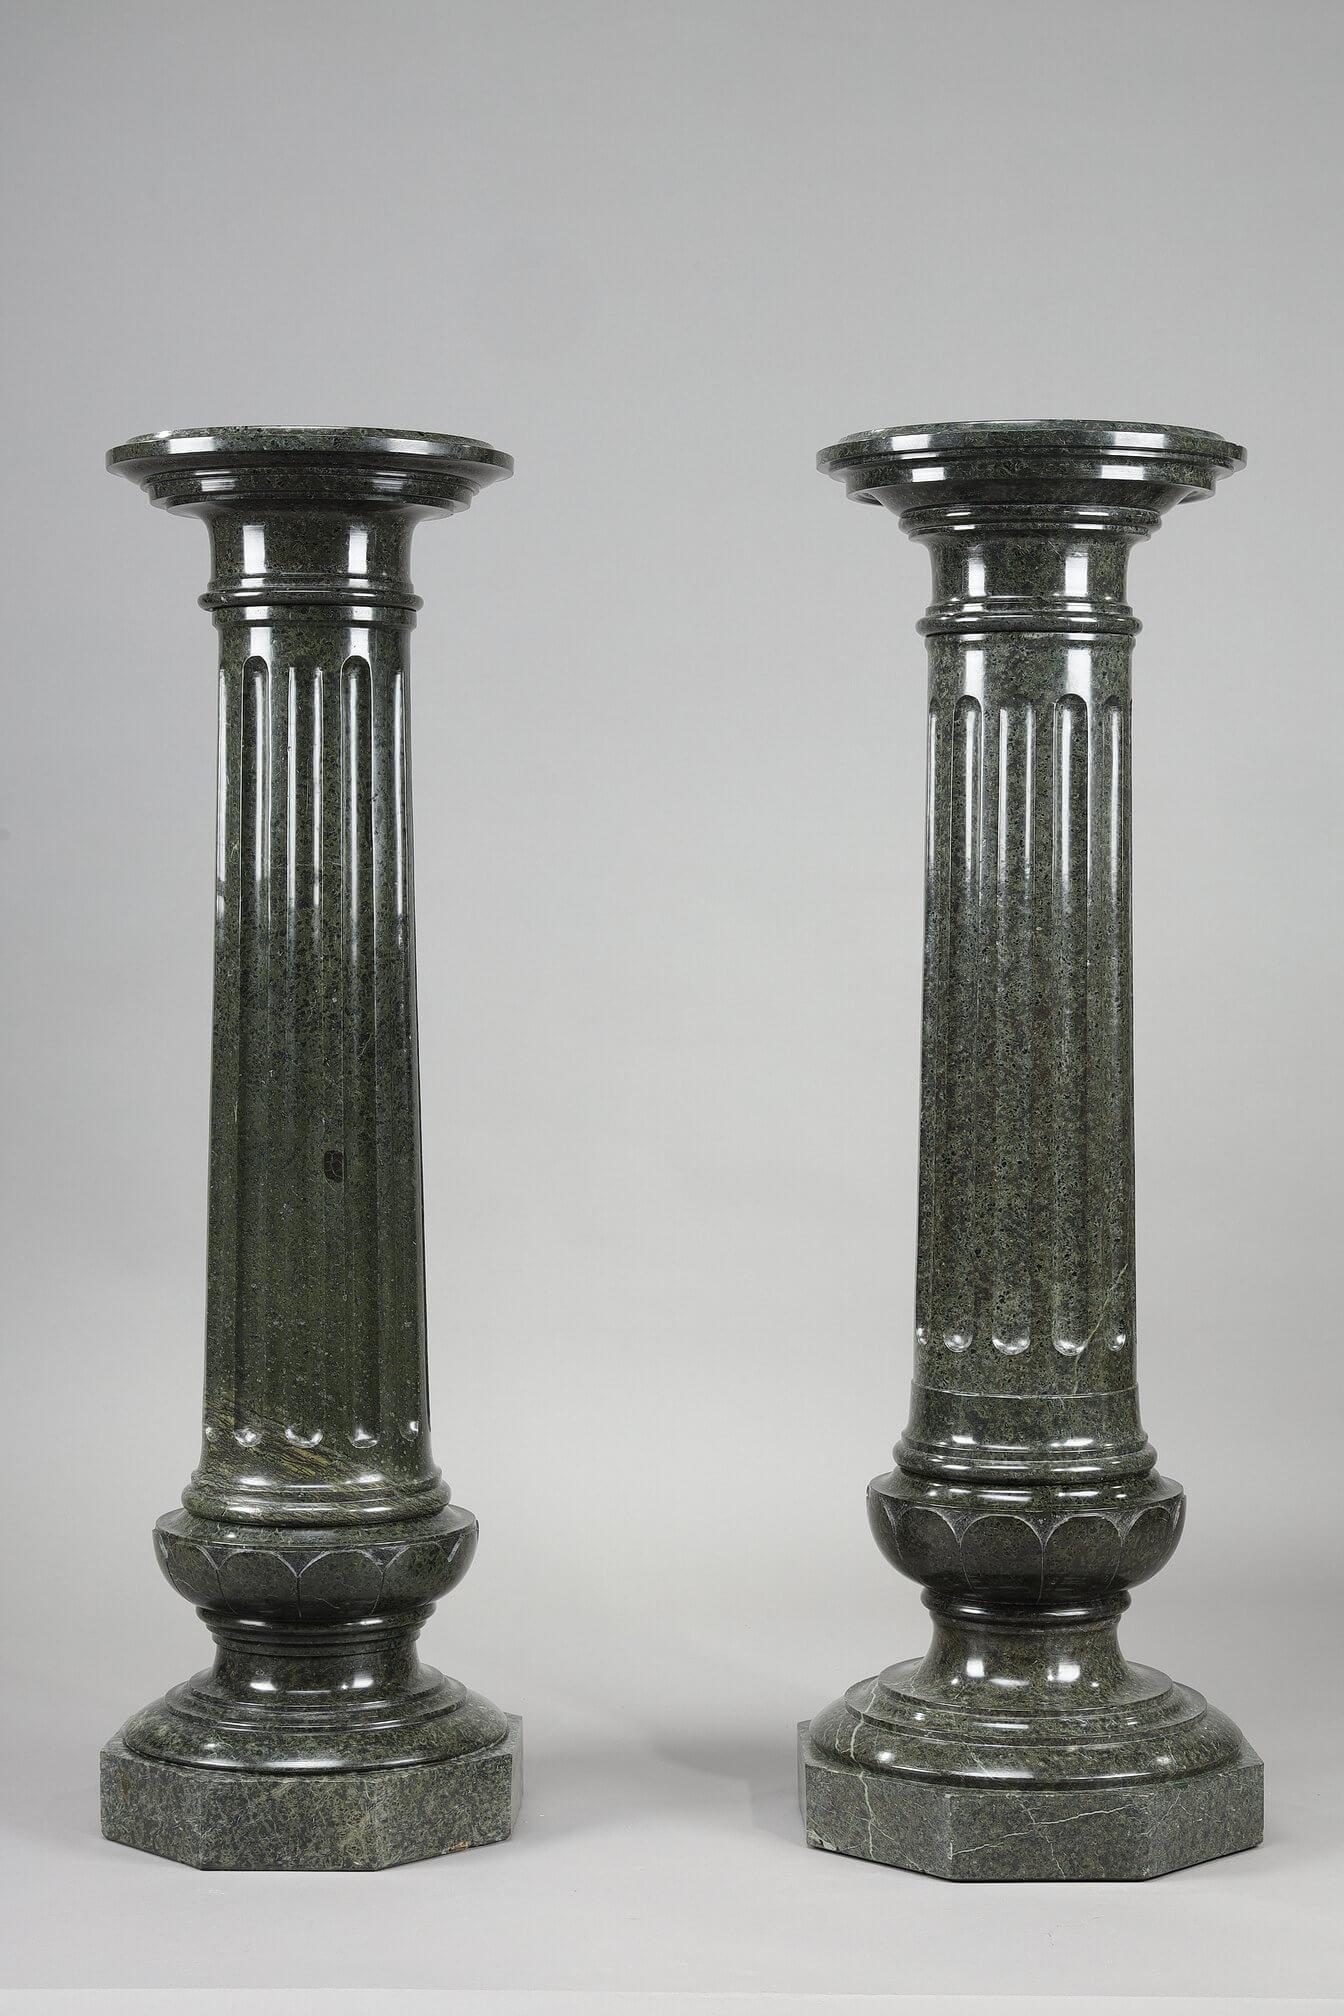 Zwei große Säulen aus grün geädertem Marmor mit breiten Kanneluren, die unterschiedlich geformt sind, aber auch eine Hängevorrichtung bilden können. Achteckiger Sockel.

Abmessung: B: 35cm, T: 35cm, H: 109cm.
Abmessung: B: 13,8in, T: 13,8in, H: